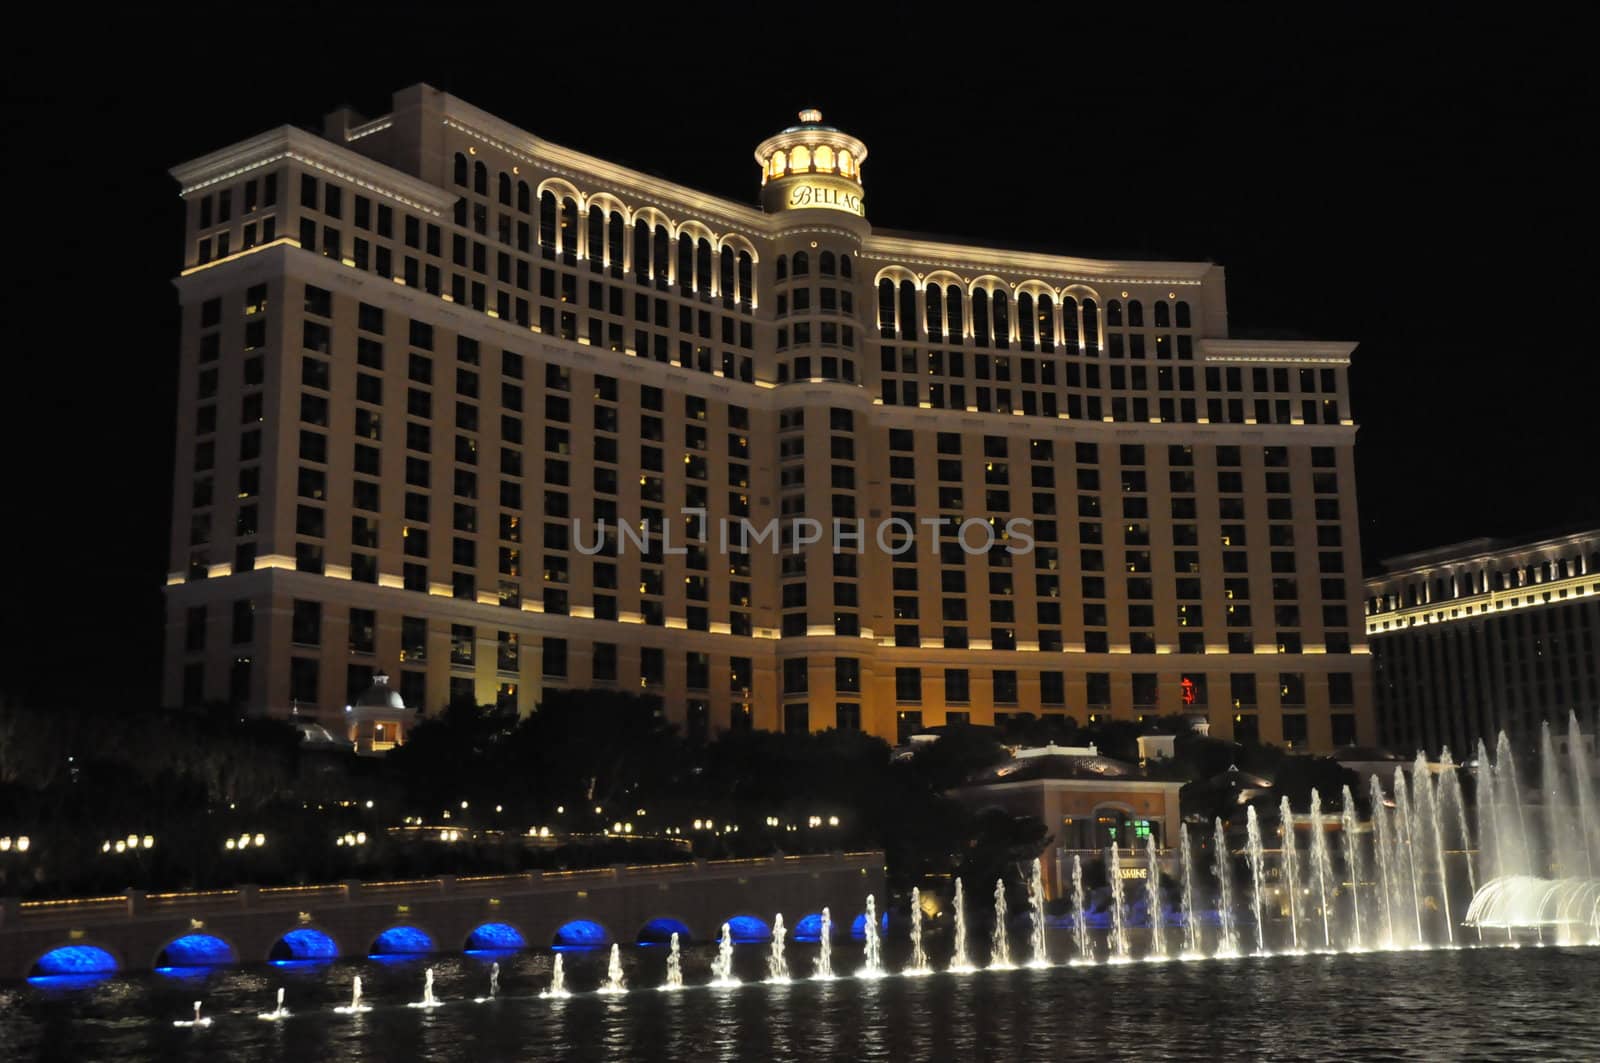 Bellagio Hotel & Casino Fountains in Las Vegas